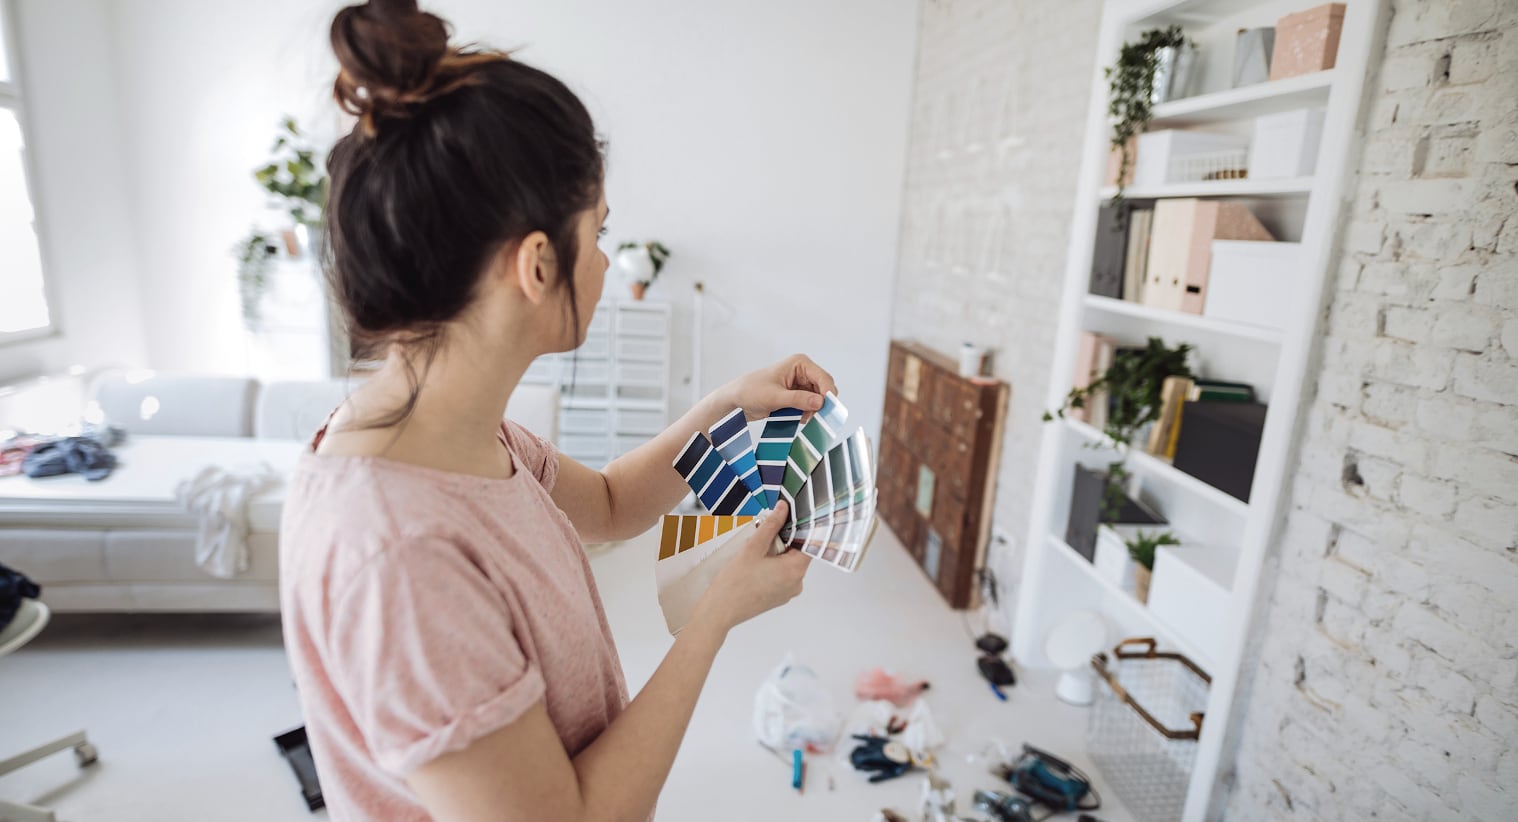 Una donna sceglie il colore perfetto delle pareti per la sua nuova casa, che ha potuto acquistare grazie a un finanziamento transitorio.